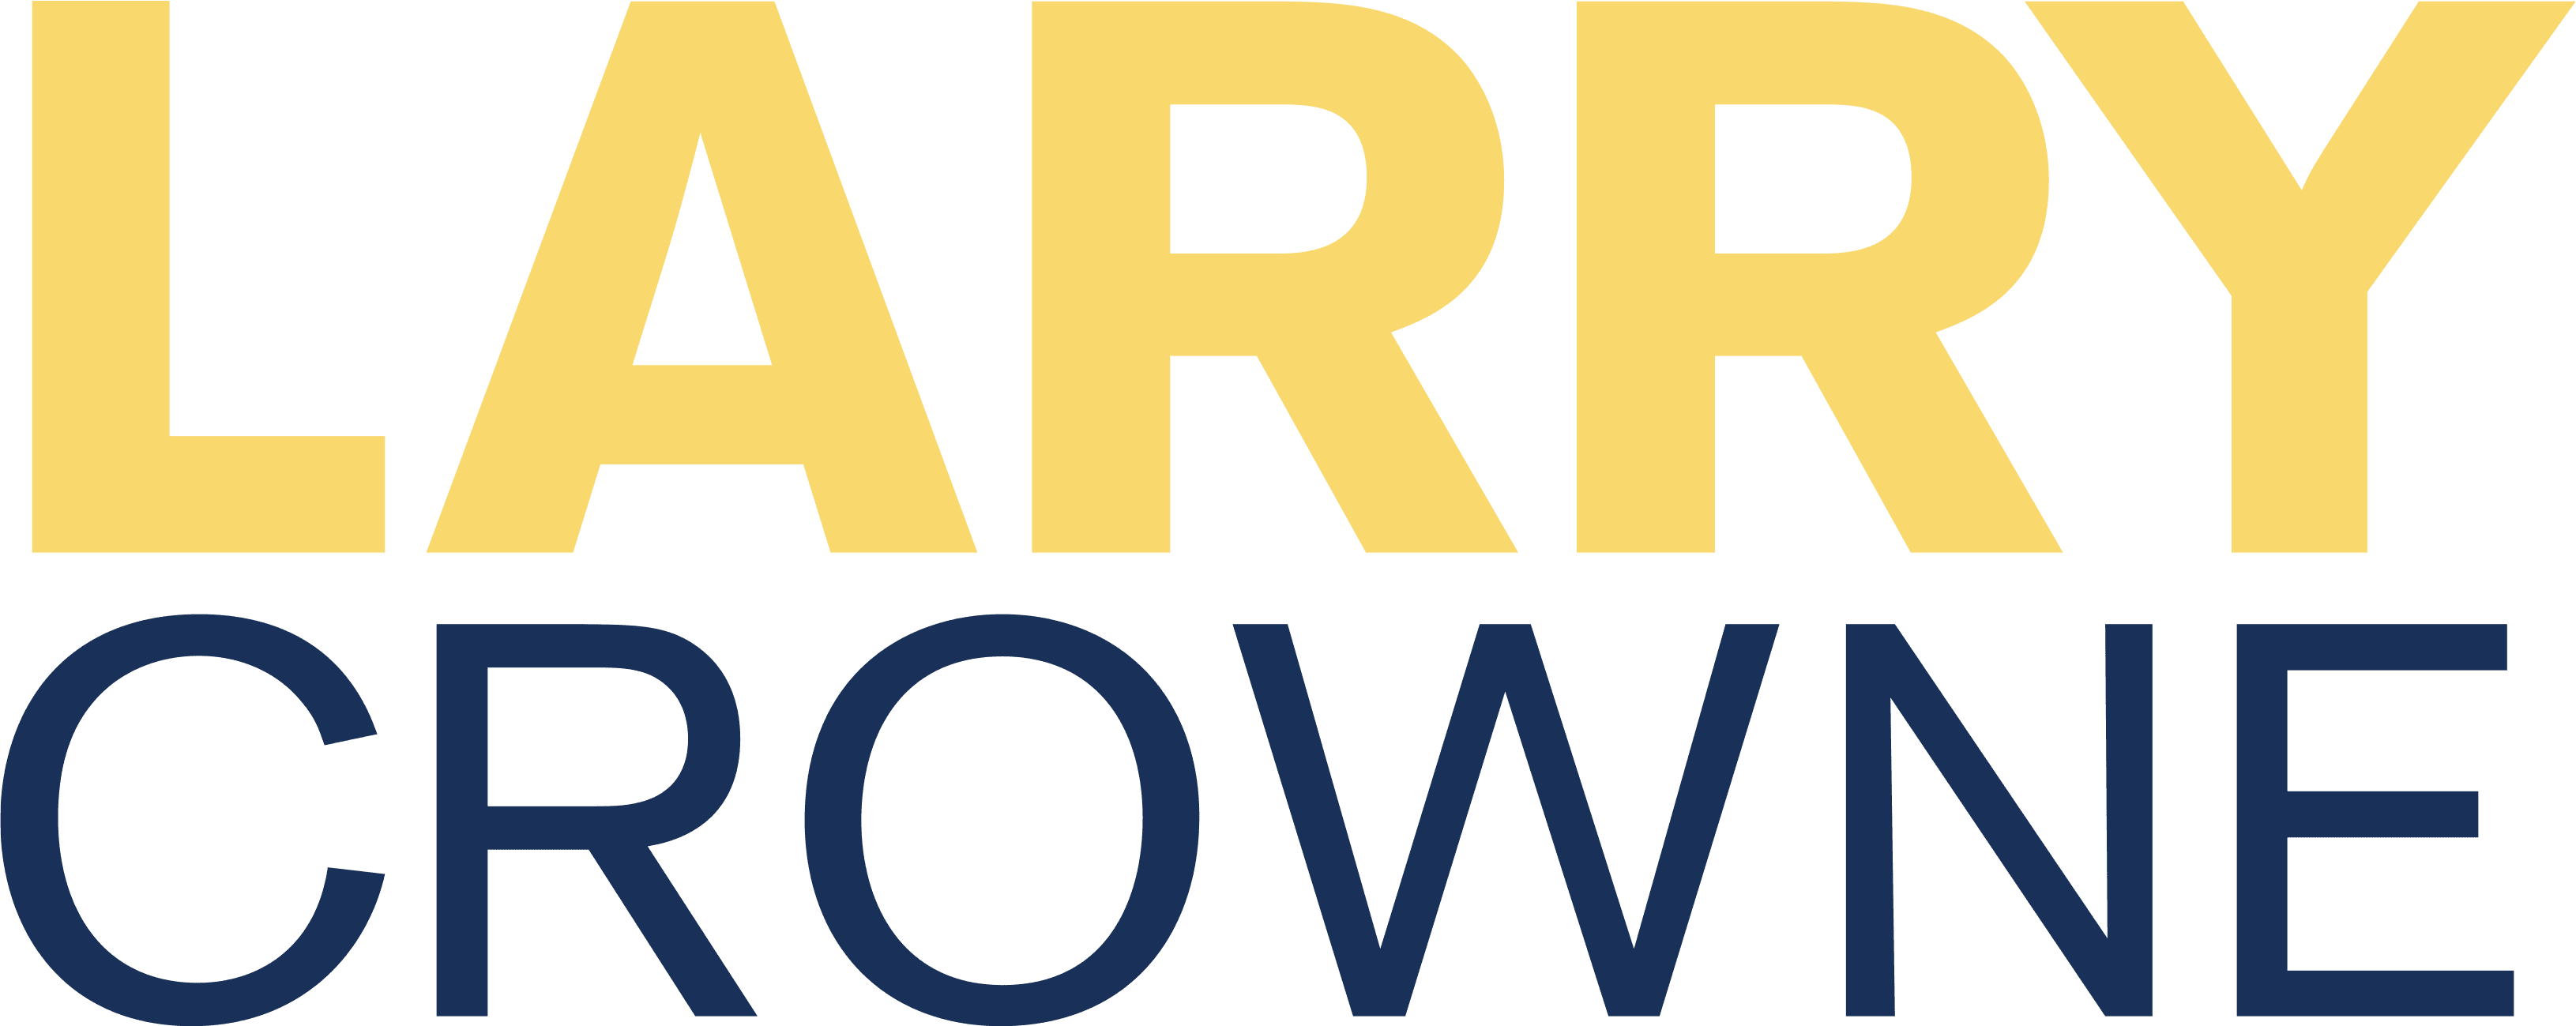 Larry Crowne logo